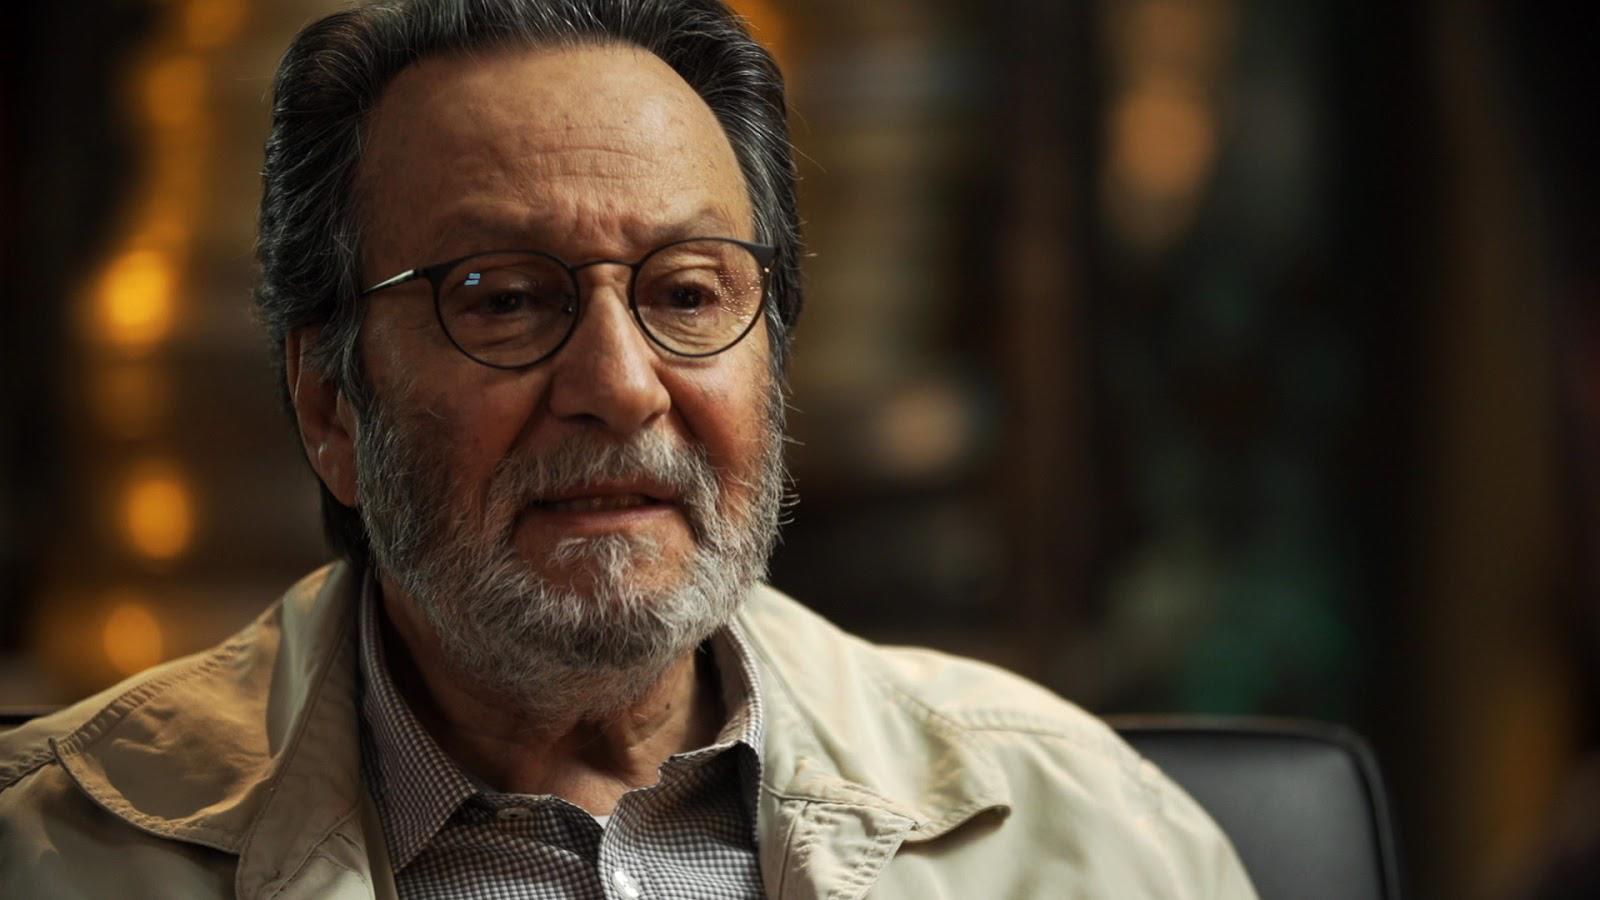 Fallece el director mexicano Jorge Fons, reconocido por ‘Rojo Amanecer’ y ‘El callejón de los milagros’; AMLO lamenta su muerte. Noticias en tiempo real